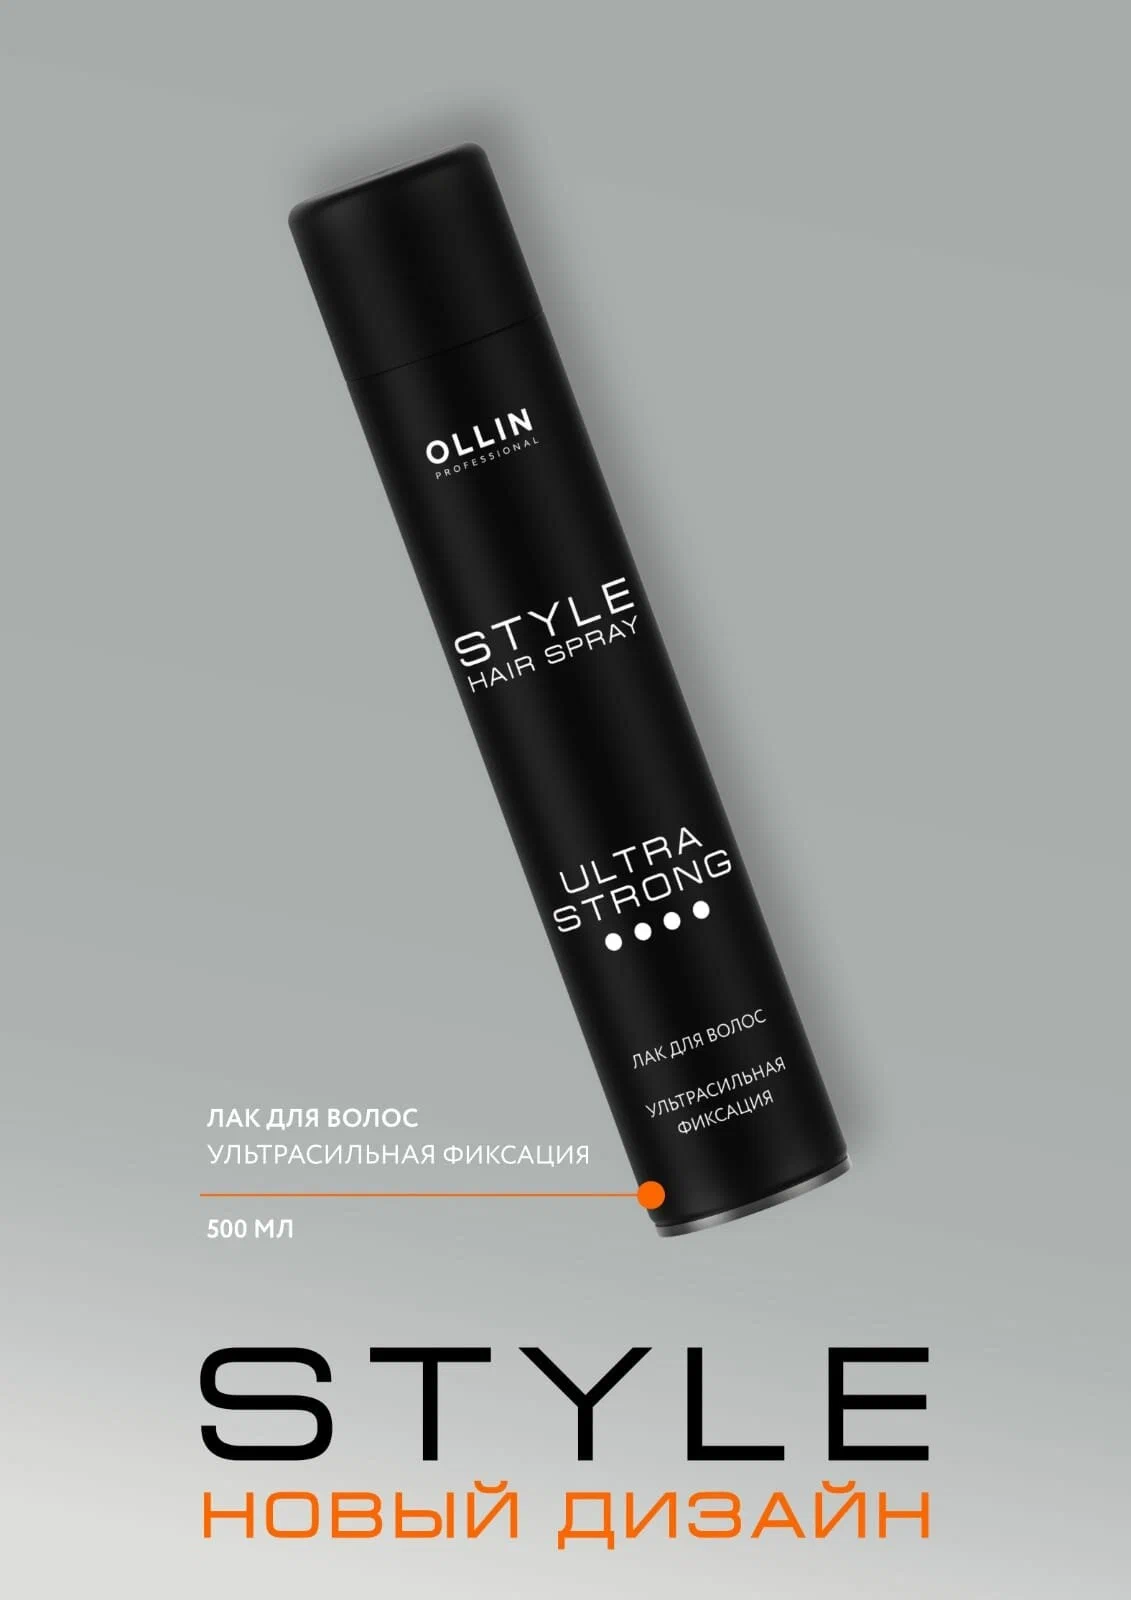 OLLIN Professional Лак для волос, ультрасильная фиксация, 500 г, 500 мл